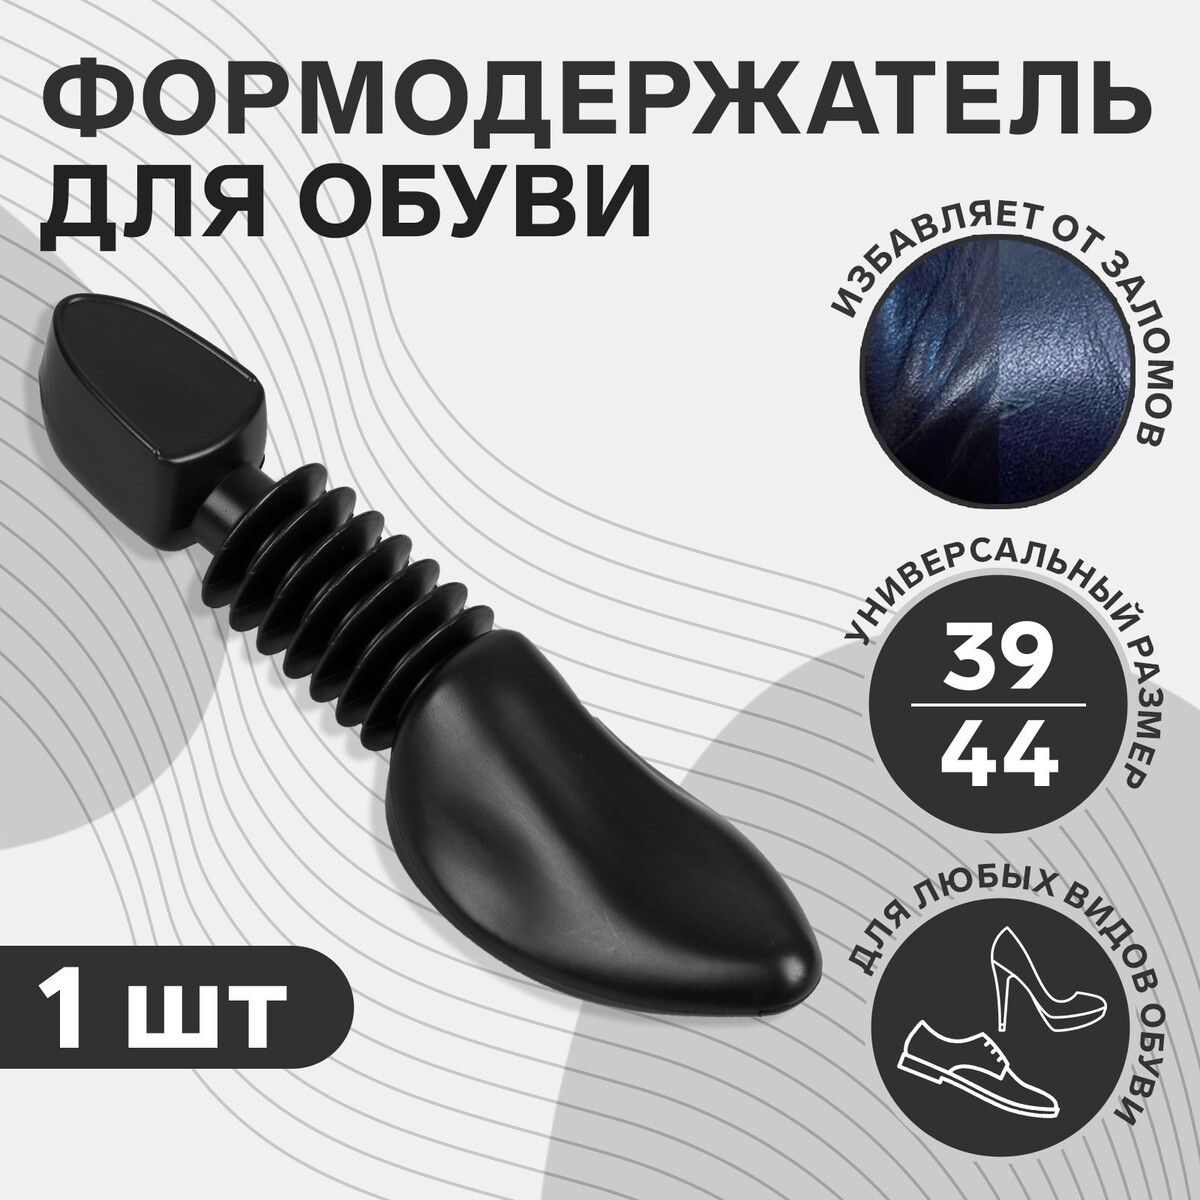 Колодка для сохранения формы обуви, 39-44р-р, цвет черный bondibon игры на липучках а и формы